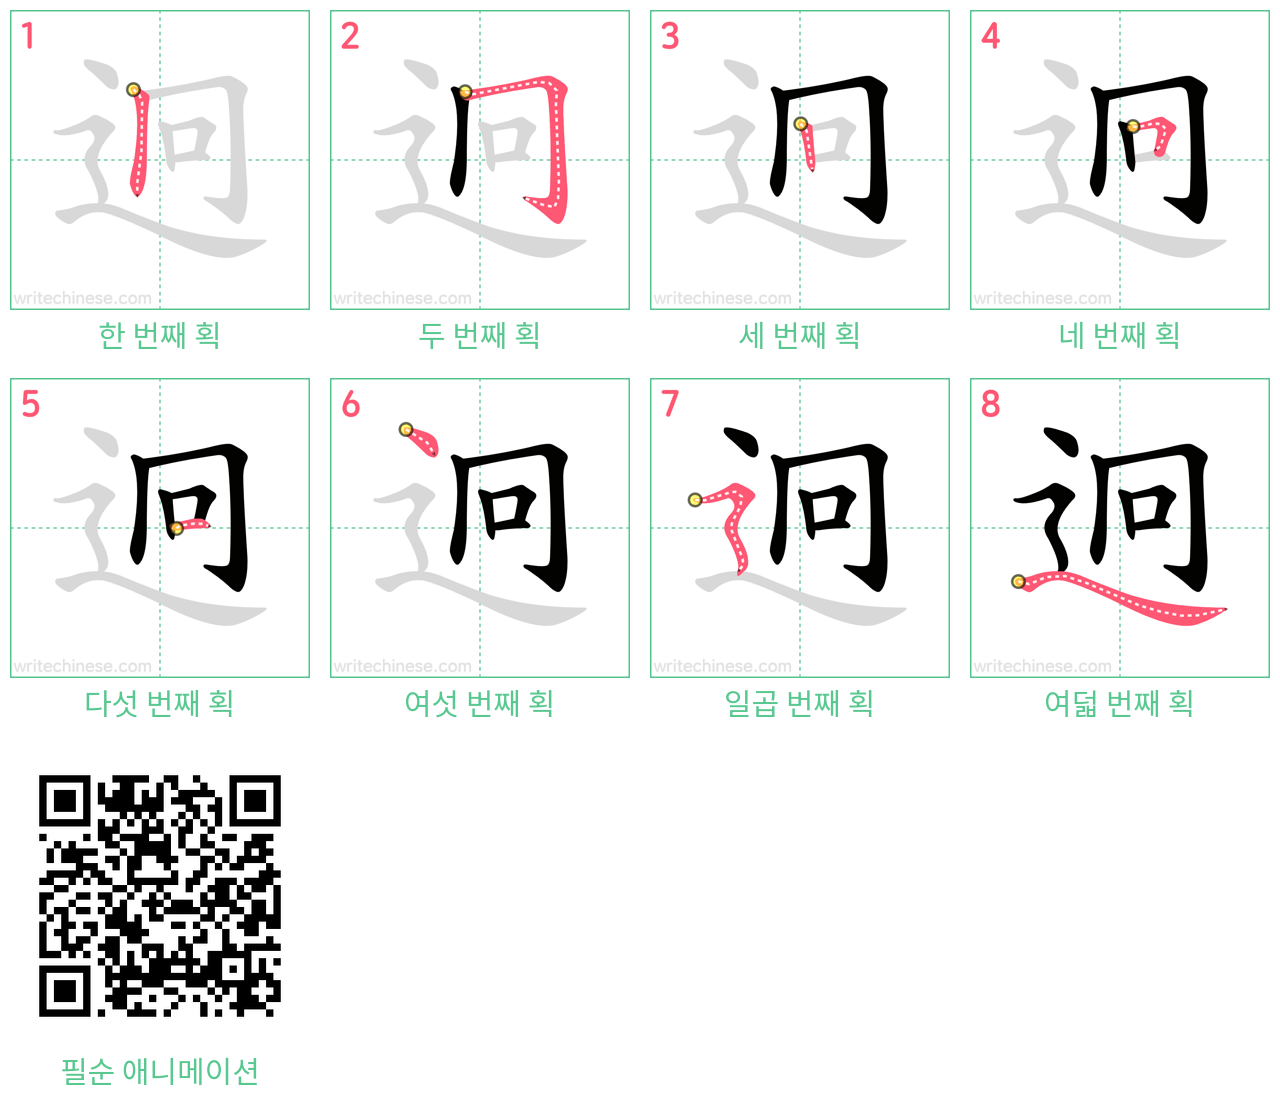 迥 step-by-step stroke order diagrams